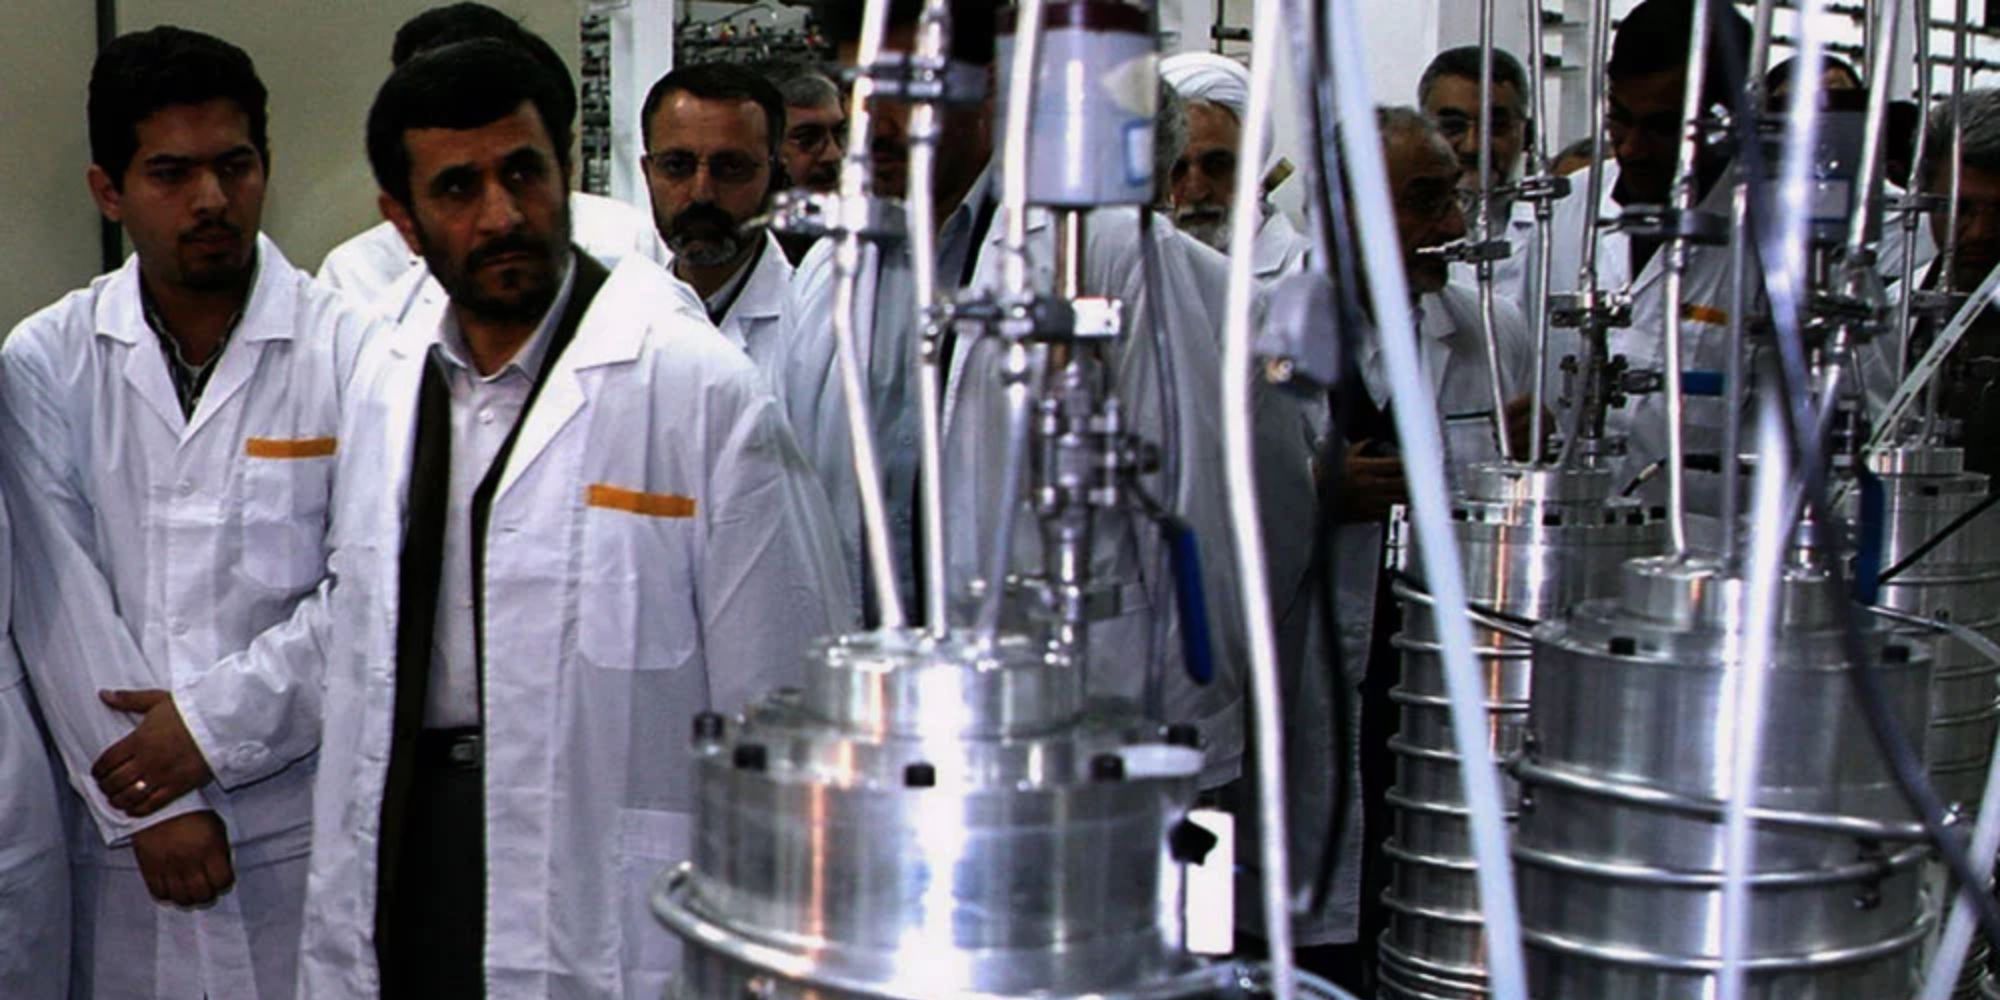 El presidente iraní y su equipo de científicos caminan por una instalación.